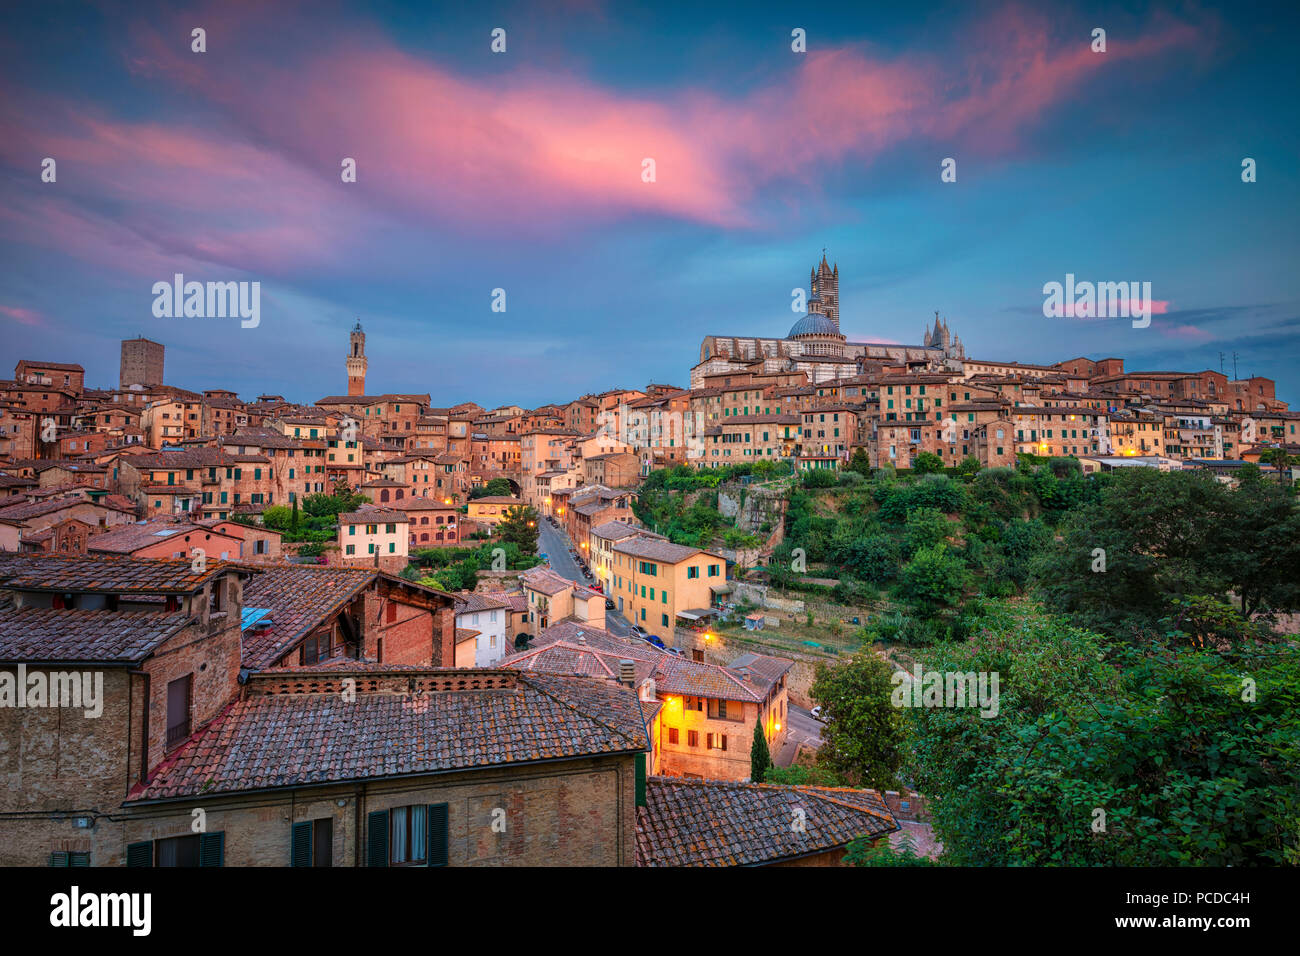 Siena. Cityscape immagine aerea della città medievale di Siena, Italia durante il tramonto. Foto Stock